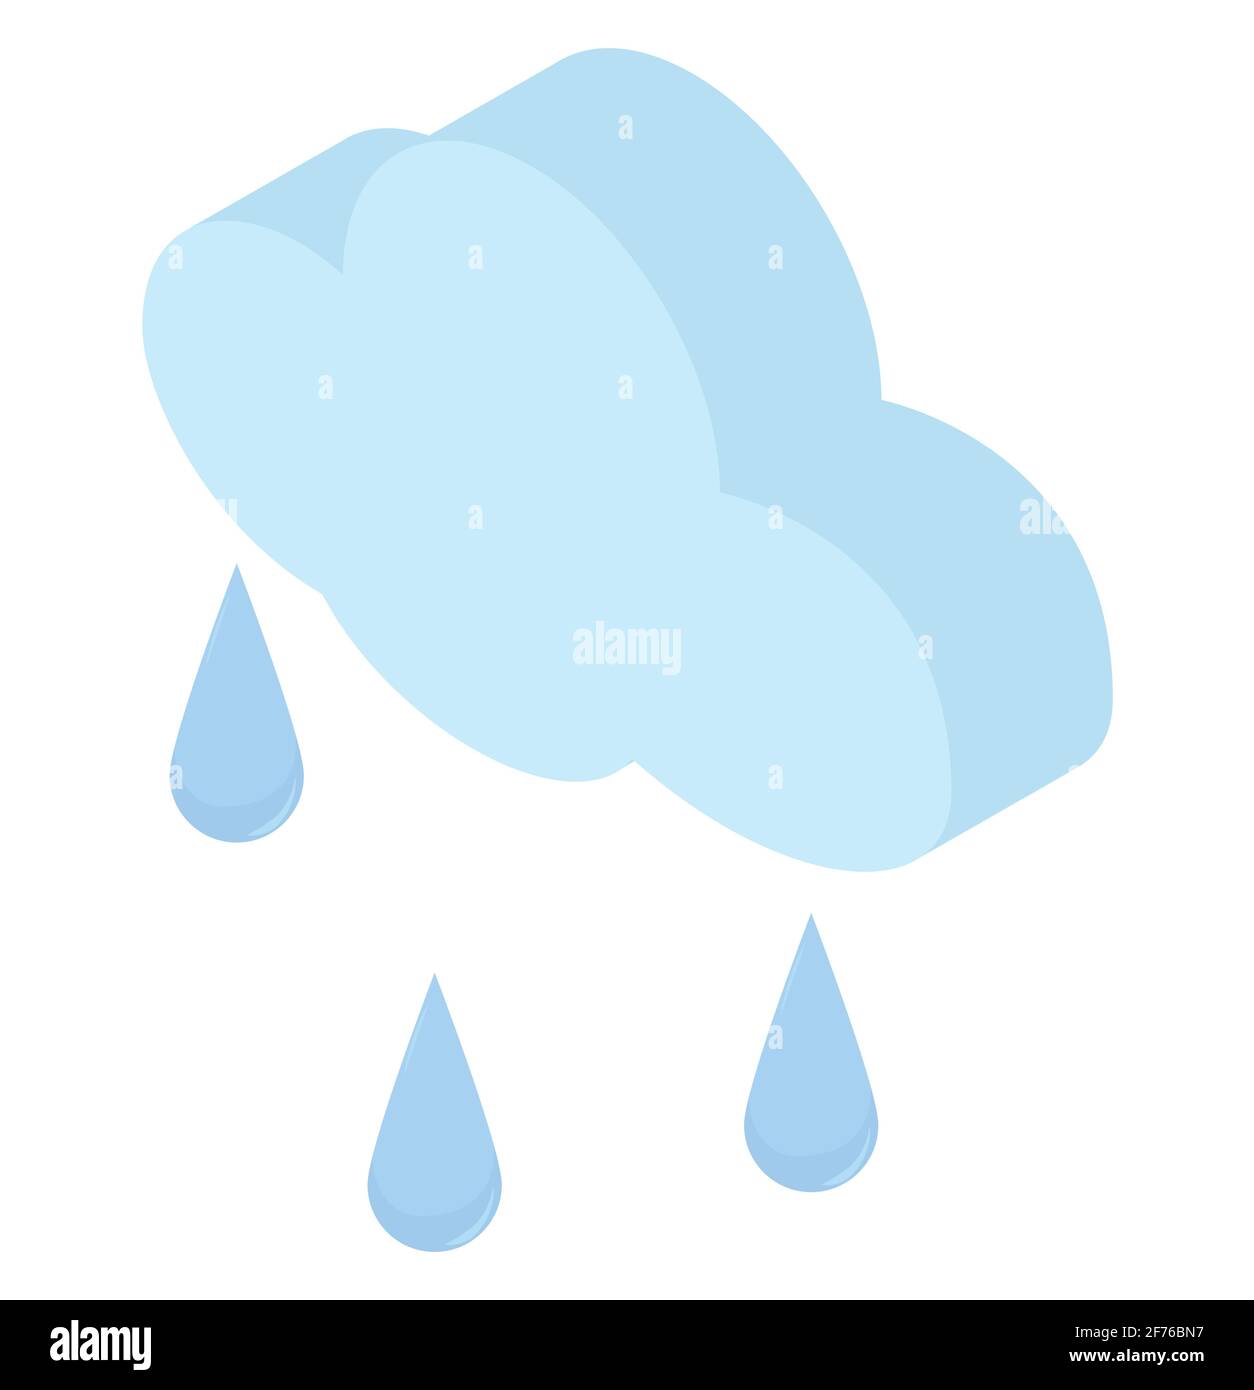 Gouttes de pluie isométriques et icône de nuage bleu. Illustration météorologique 3d simple isolée sur fond blanc. Illustration de Vecteur